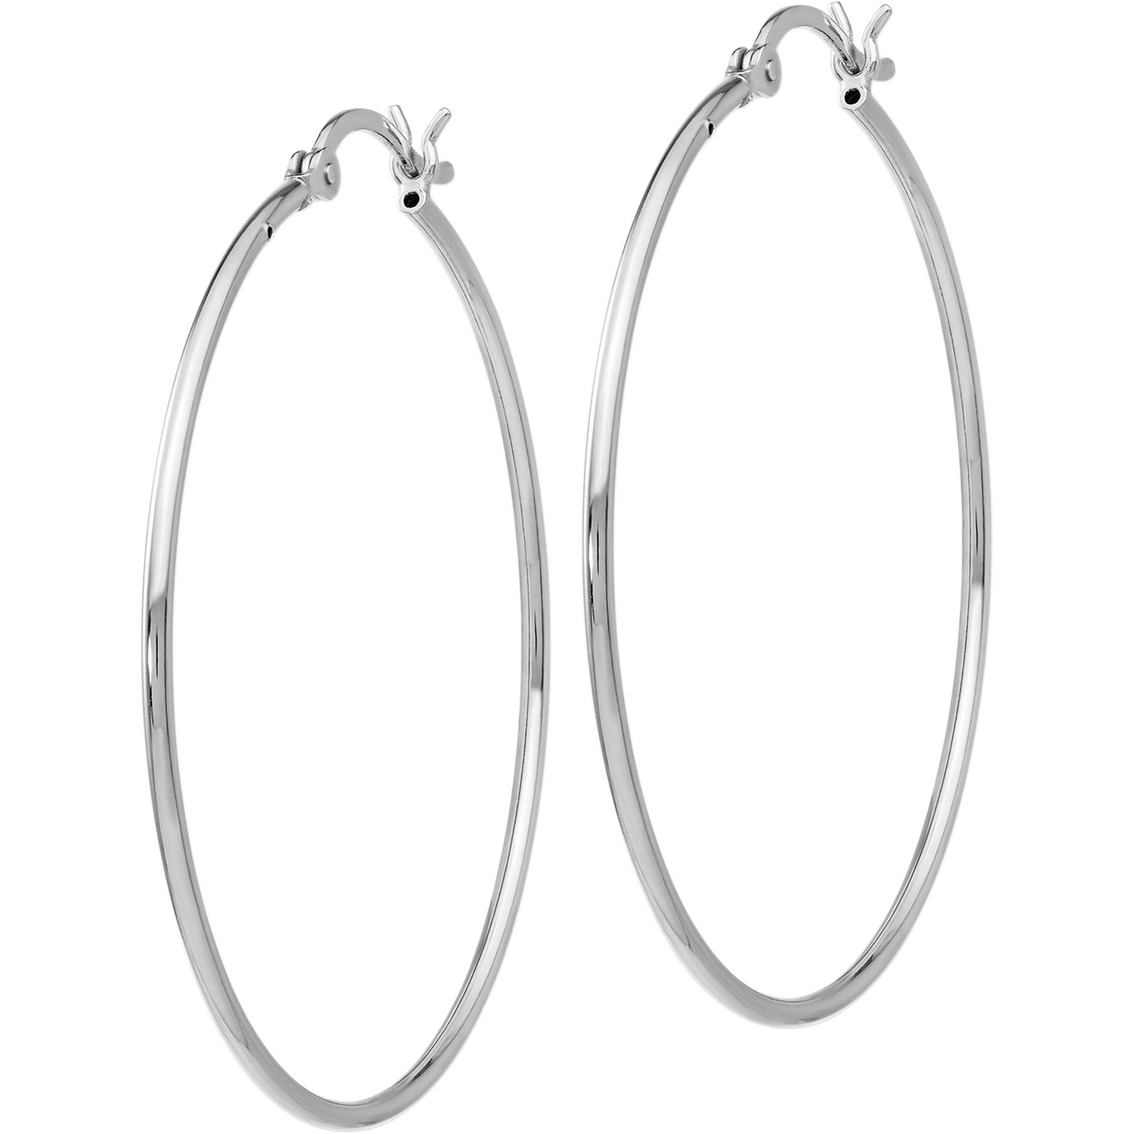 Sterling Silver Polished Hinged Hoop Earrings - Image 1 of 2